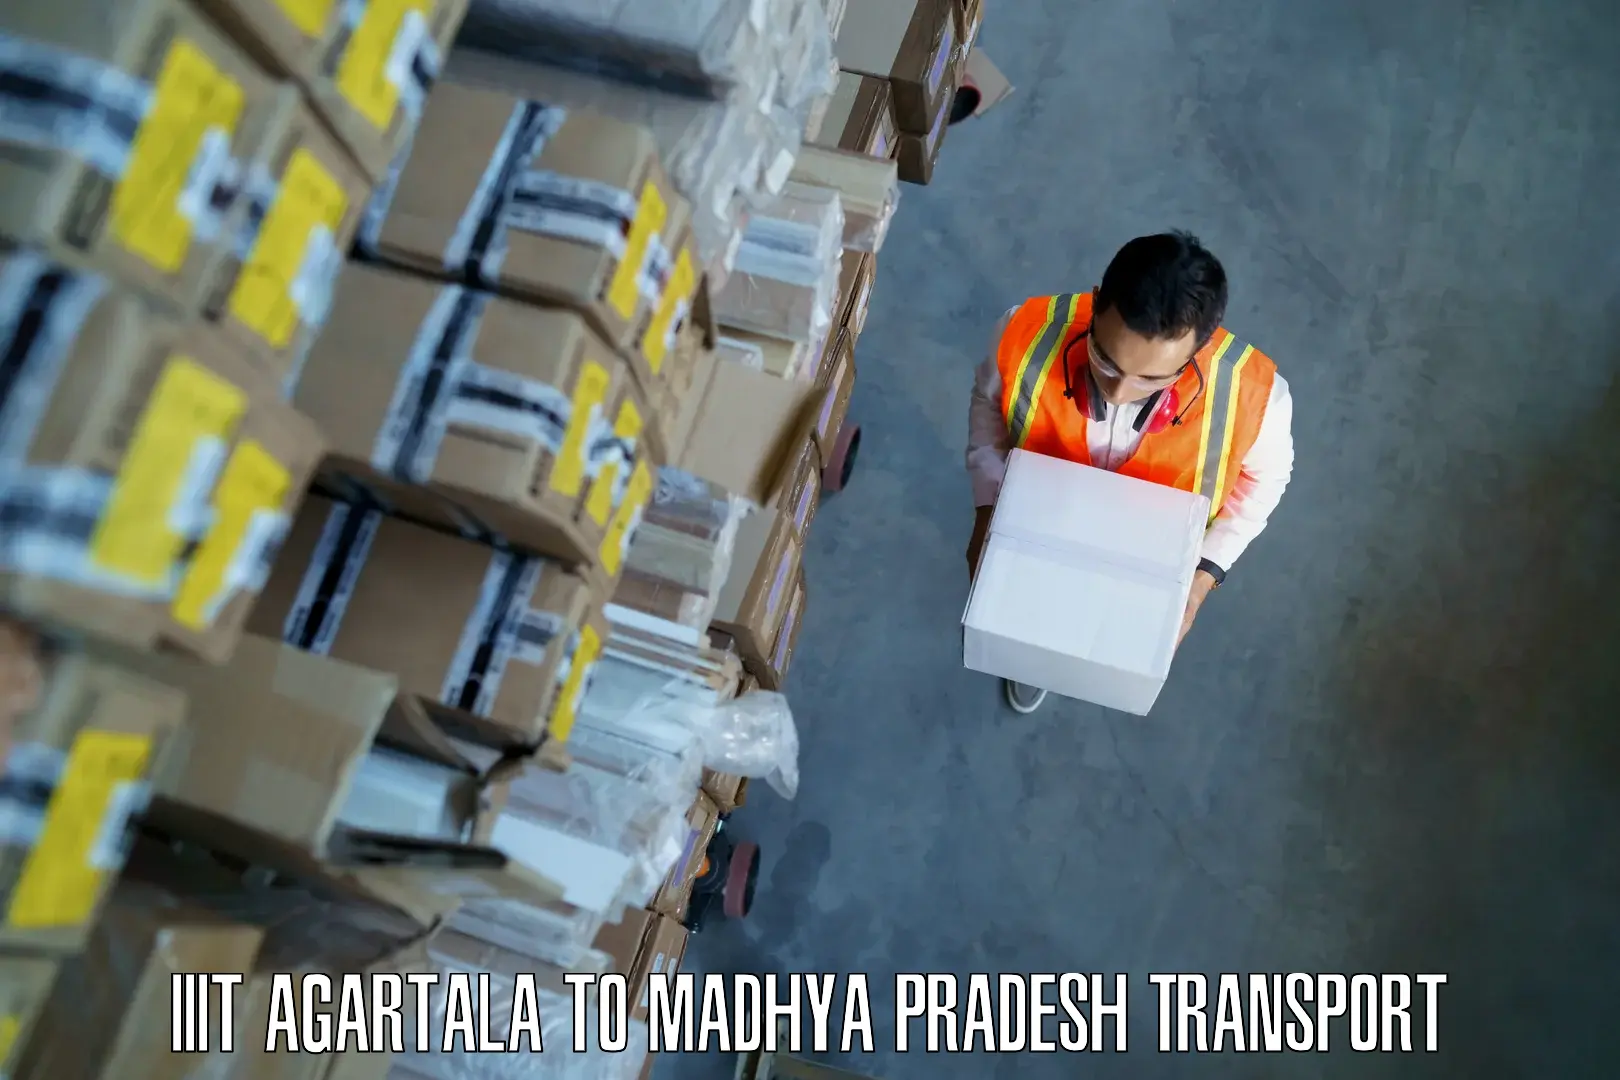 Cargo train transport services IIIT Agartala to Churhat